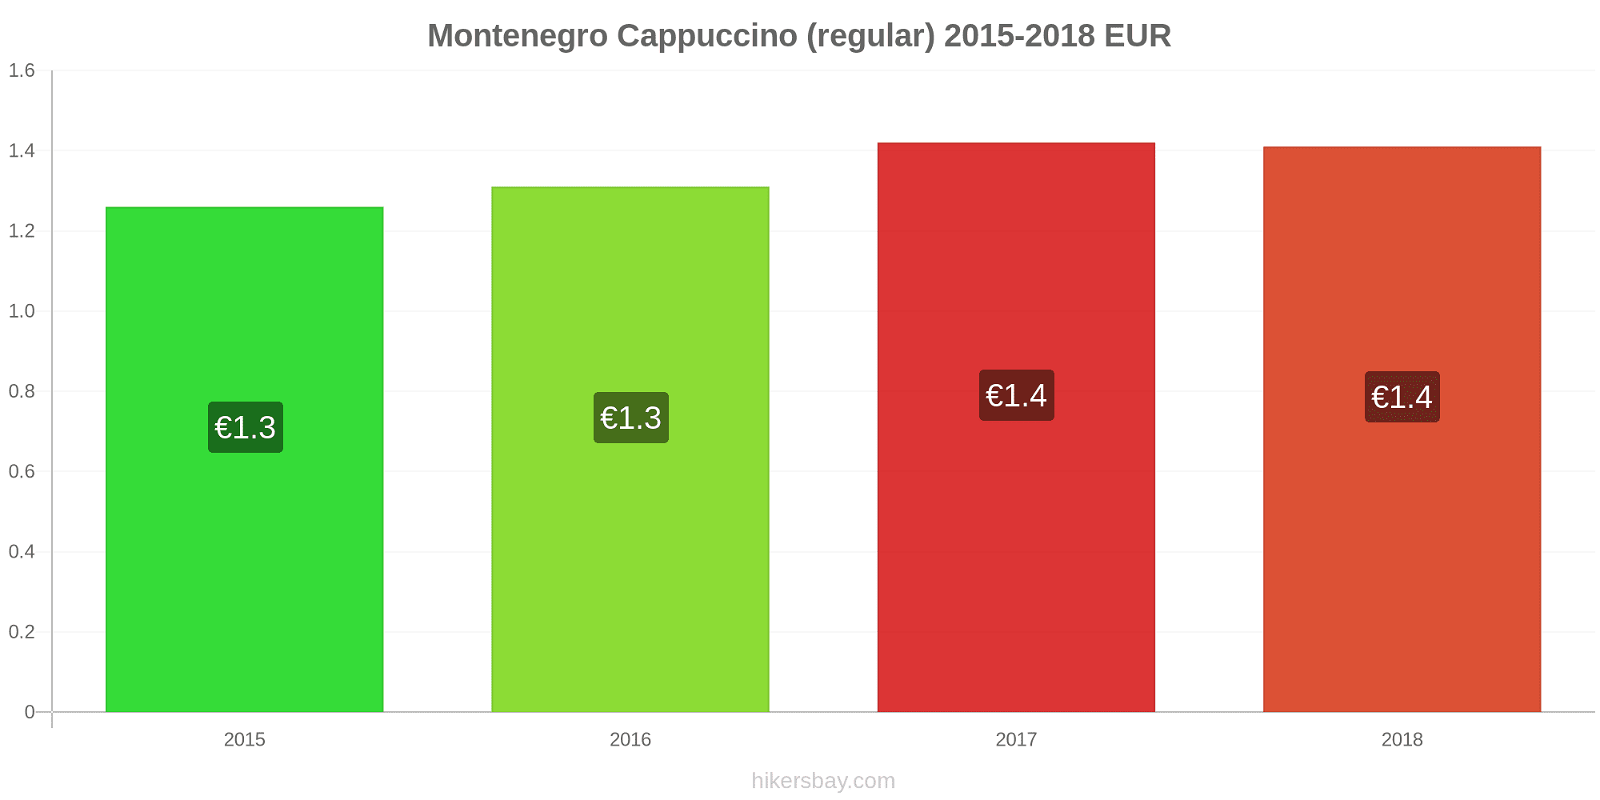 Montenegro price changes Cappuccino hikersbay.com